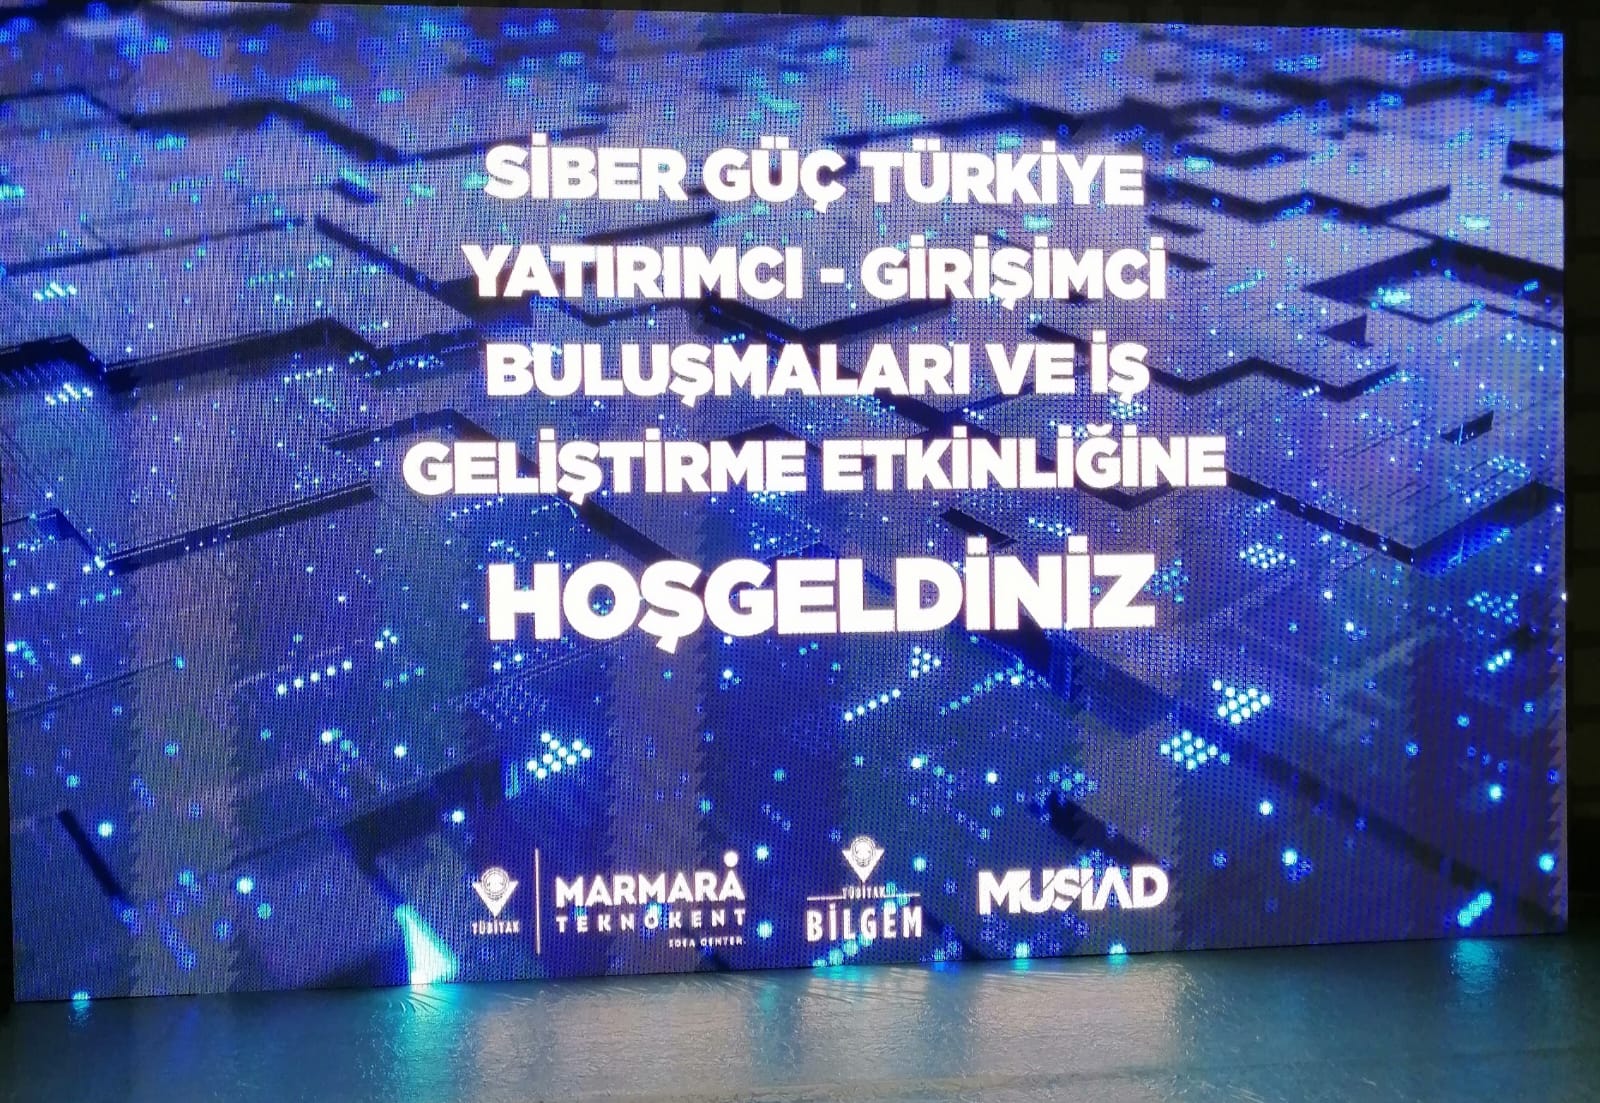 Marmara Teknokent Siber Güç Türkiye – 08.06.2022